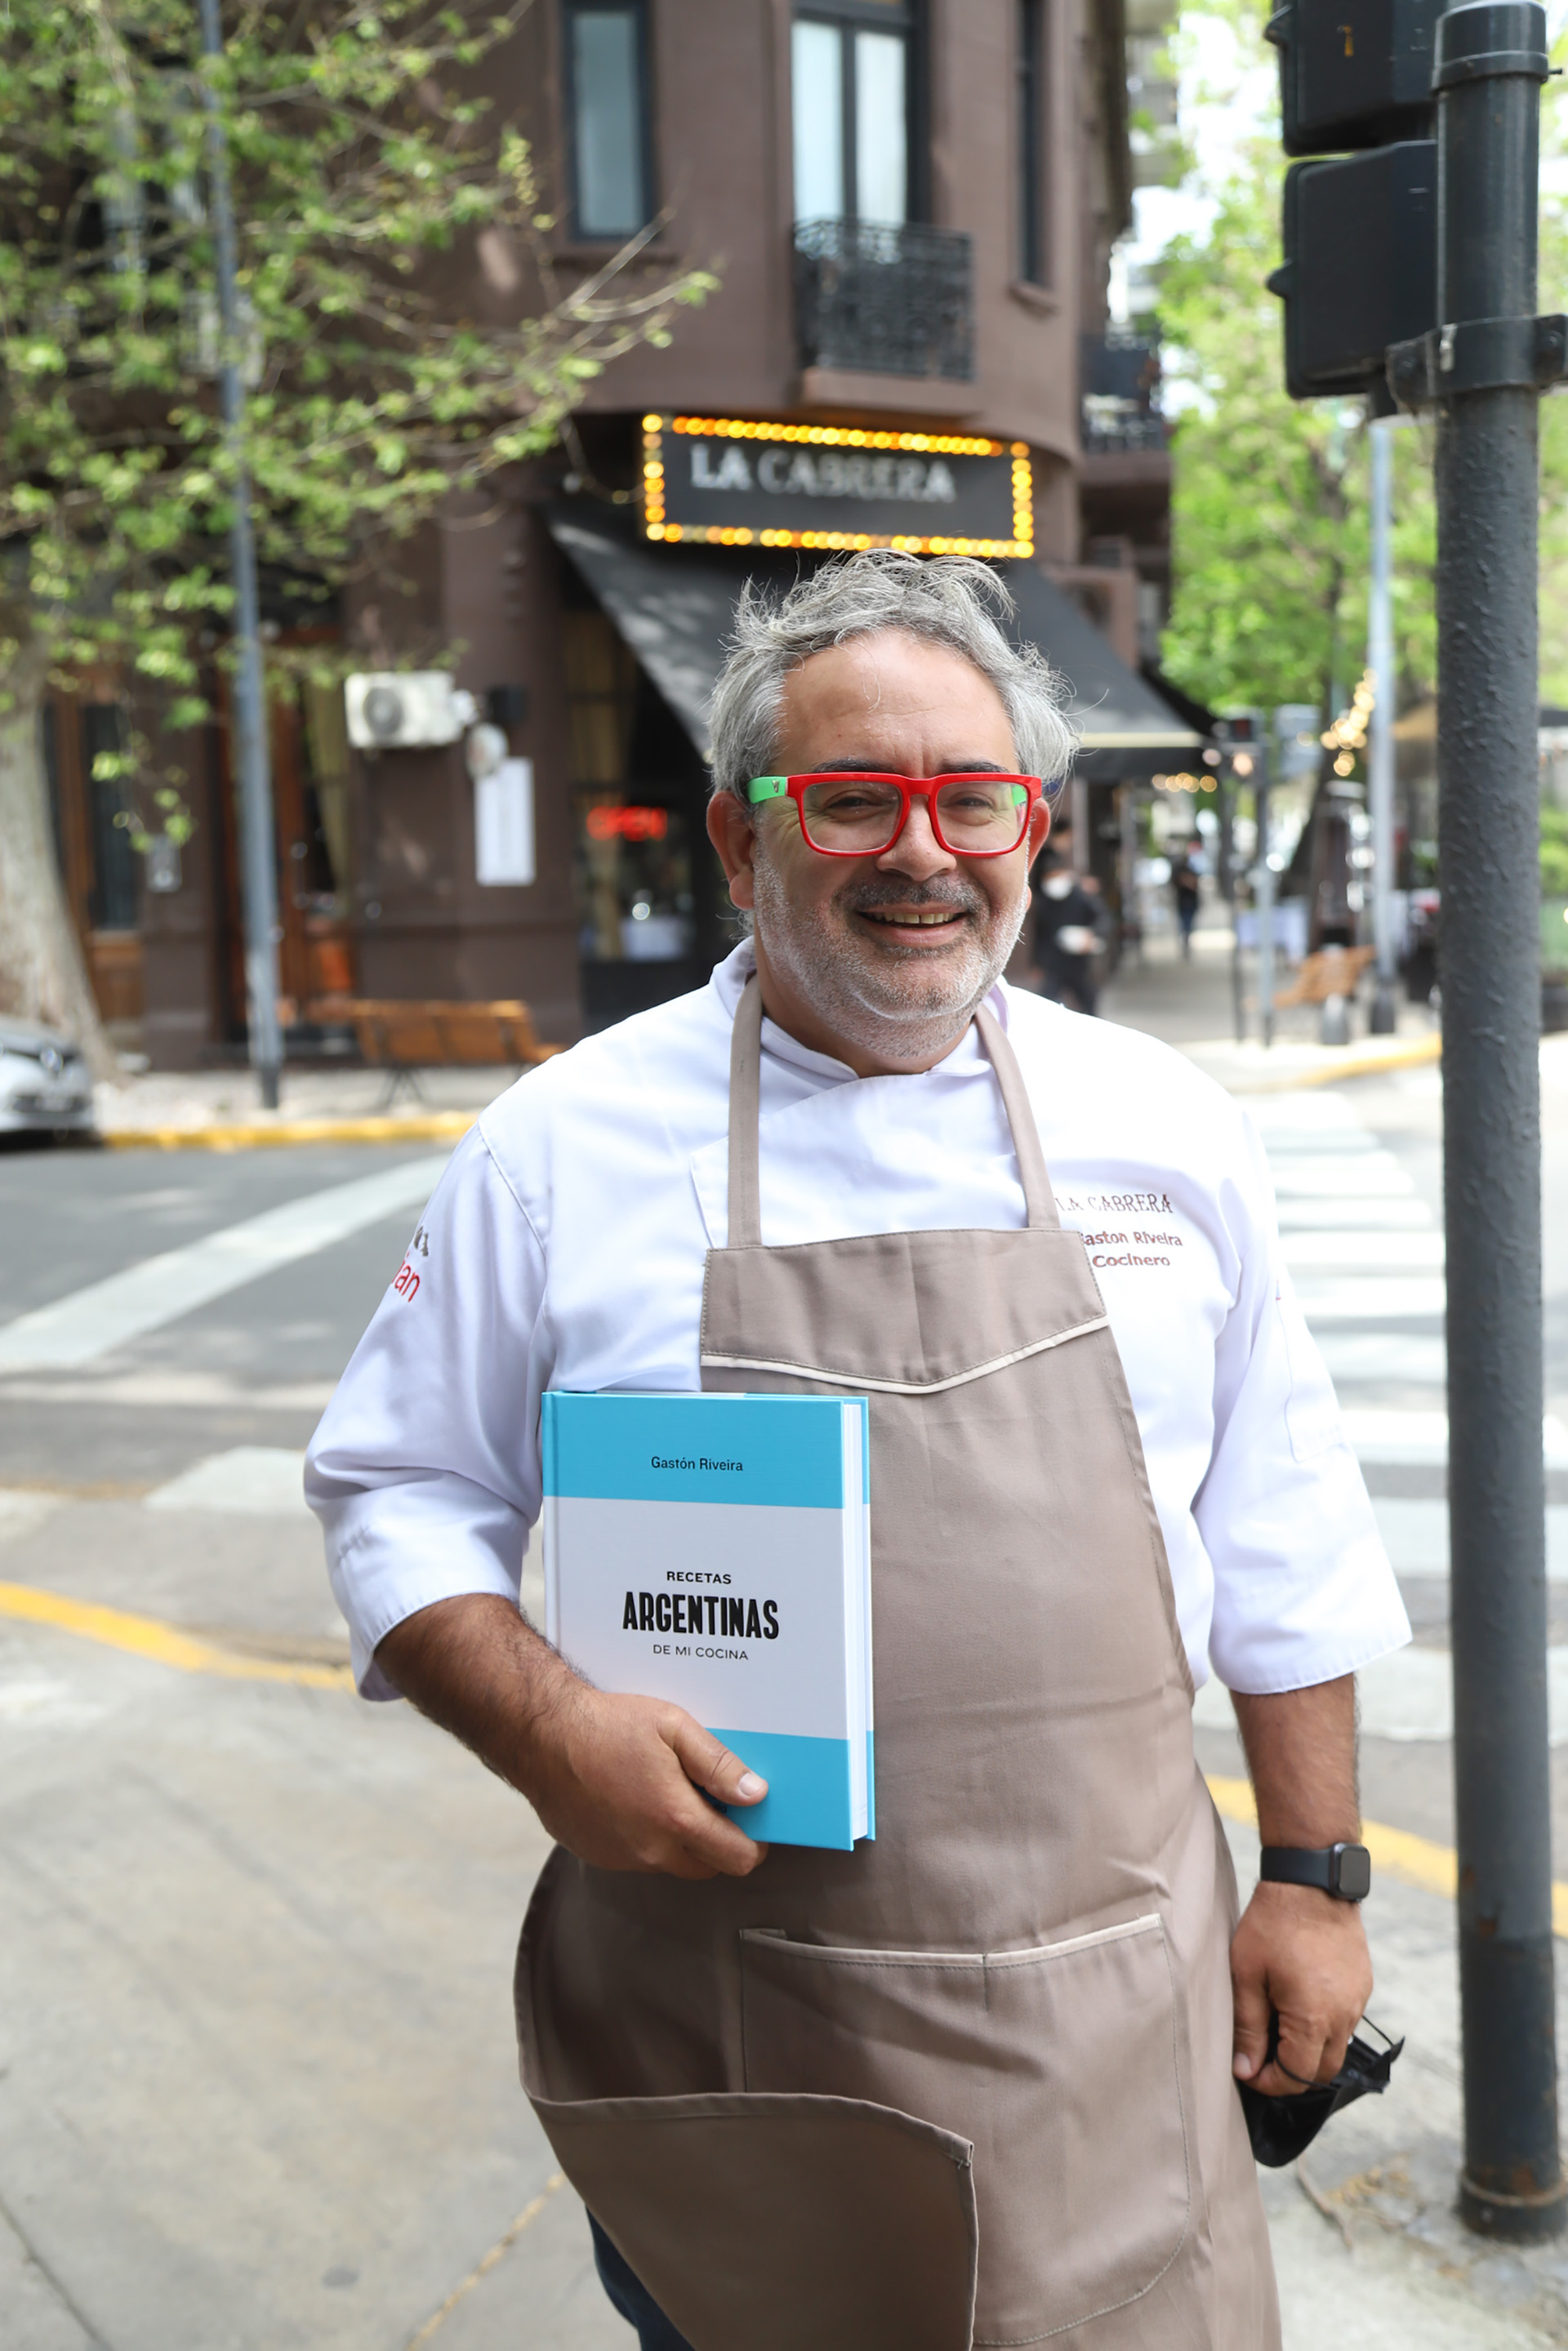 El cocinero, Gastón Riveira, durante la presentación de su nuevo libro, “Recetas argentinas de mi cocina”

